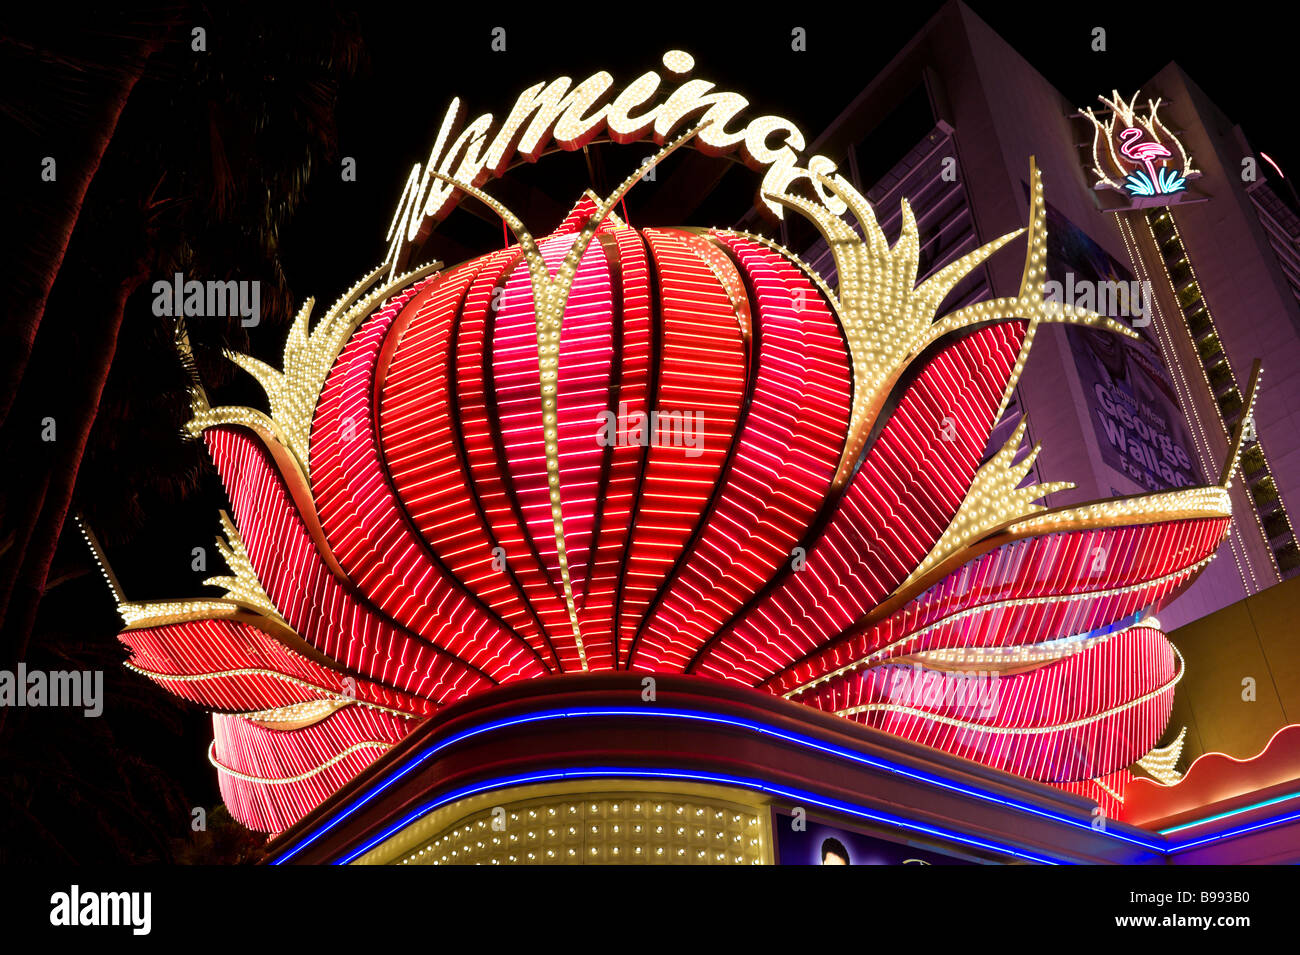 Flamingo Hotel and Casino at night, Las Vegas Boulevard (The Strip), Las Vegas, Nevada, USA Stock Photo